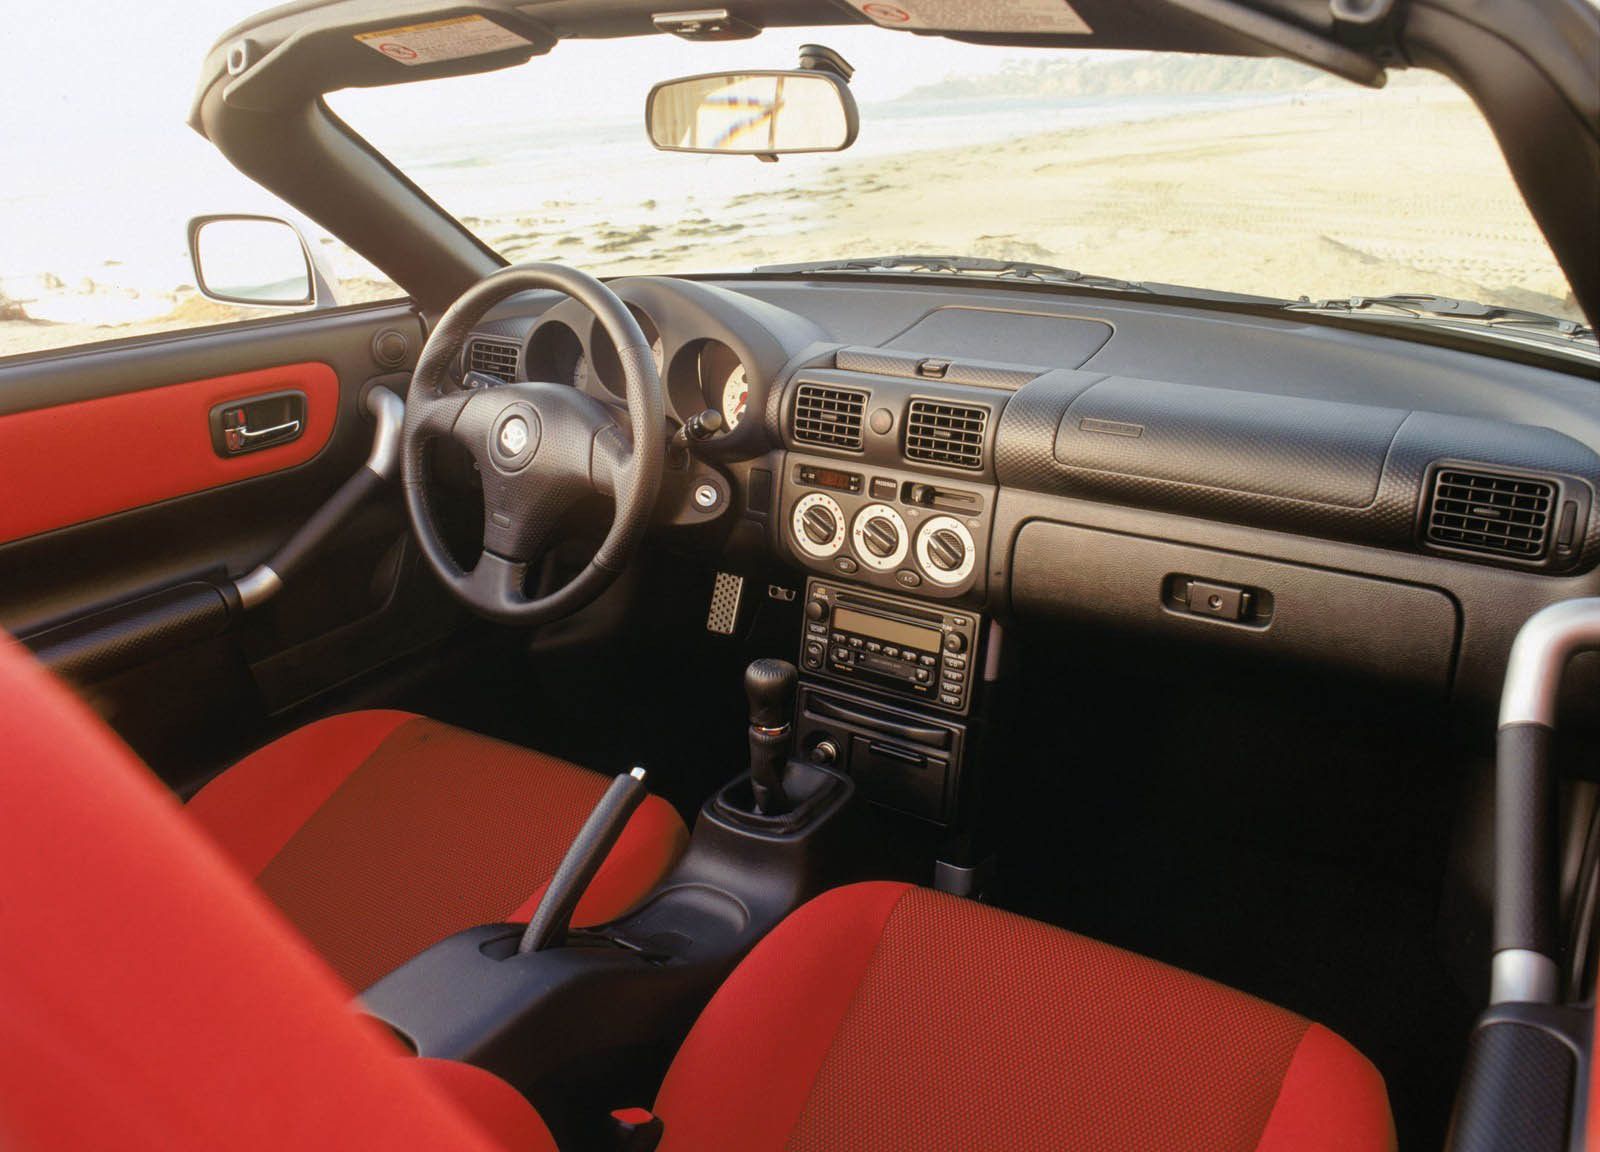 2000 - 2005 Toyota MR2 Spyder